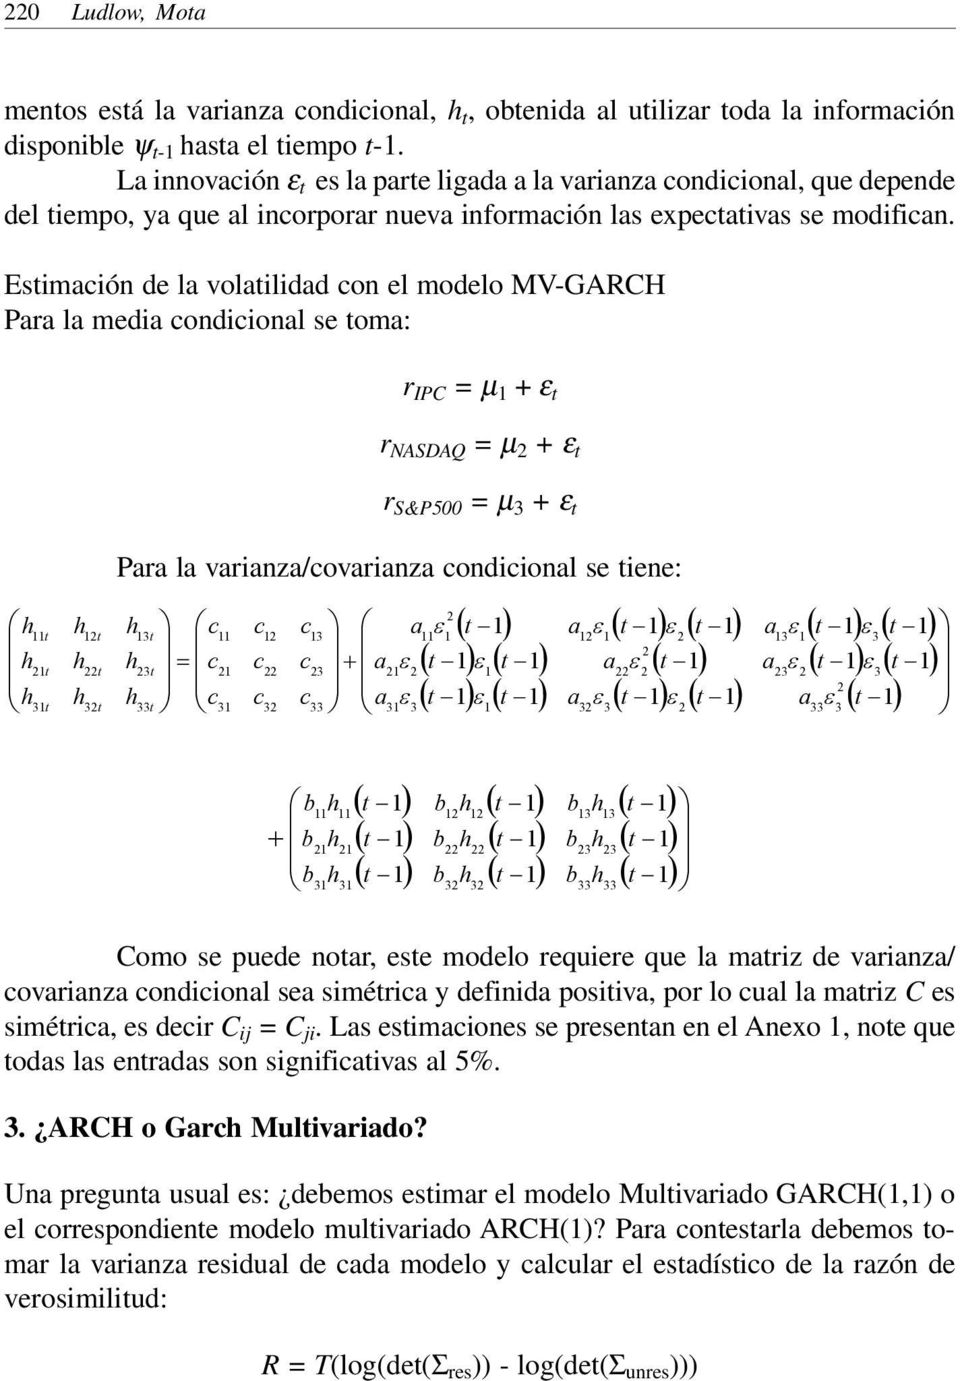 Estimación de la volatilidad con el modelo MV-GARCH Para la media condicional se toma: r IPC = µ + ε t r NASDAQ = µ + ε t r S&P500 = µ 3 + ε t t t 3t t t 3t Para la varianza/covarianza condicional se